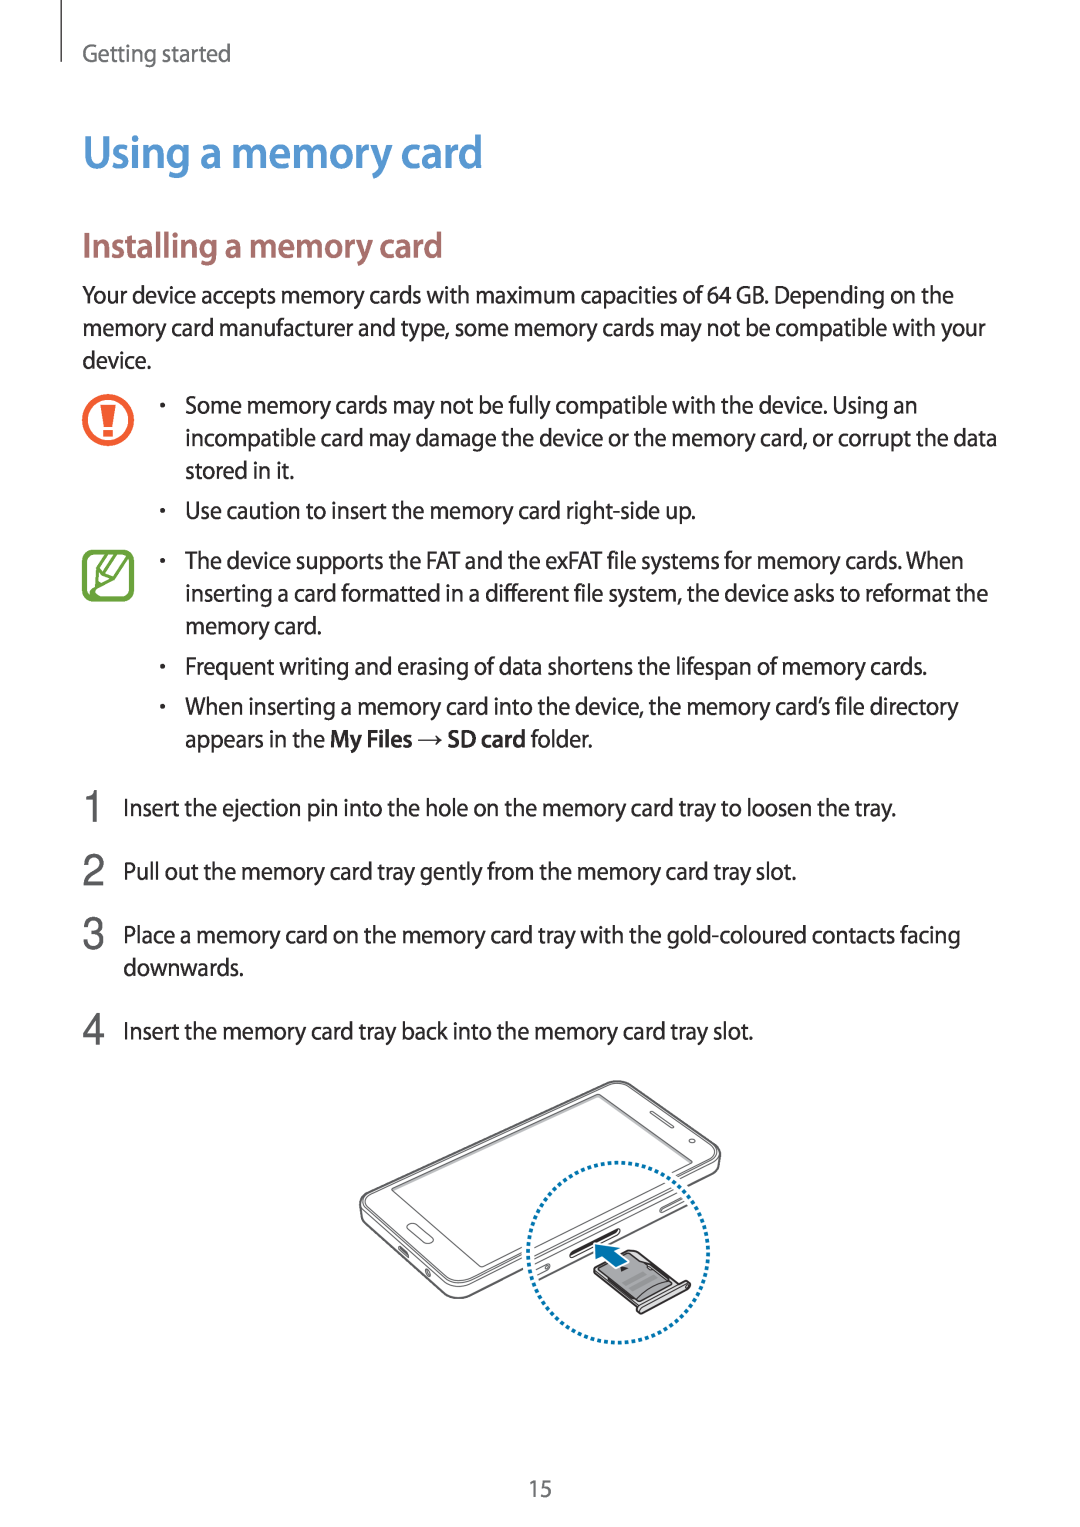 Samsung SM-A300FZDUCOS, SM-A300FZDDSEE, SM-A300FZDUMEO manual Using a memory card, Installing a memory card, Getting started 